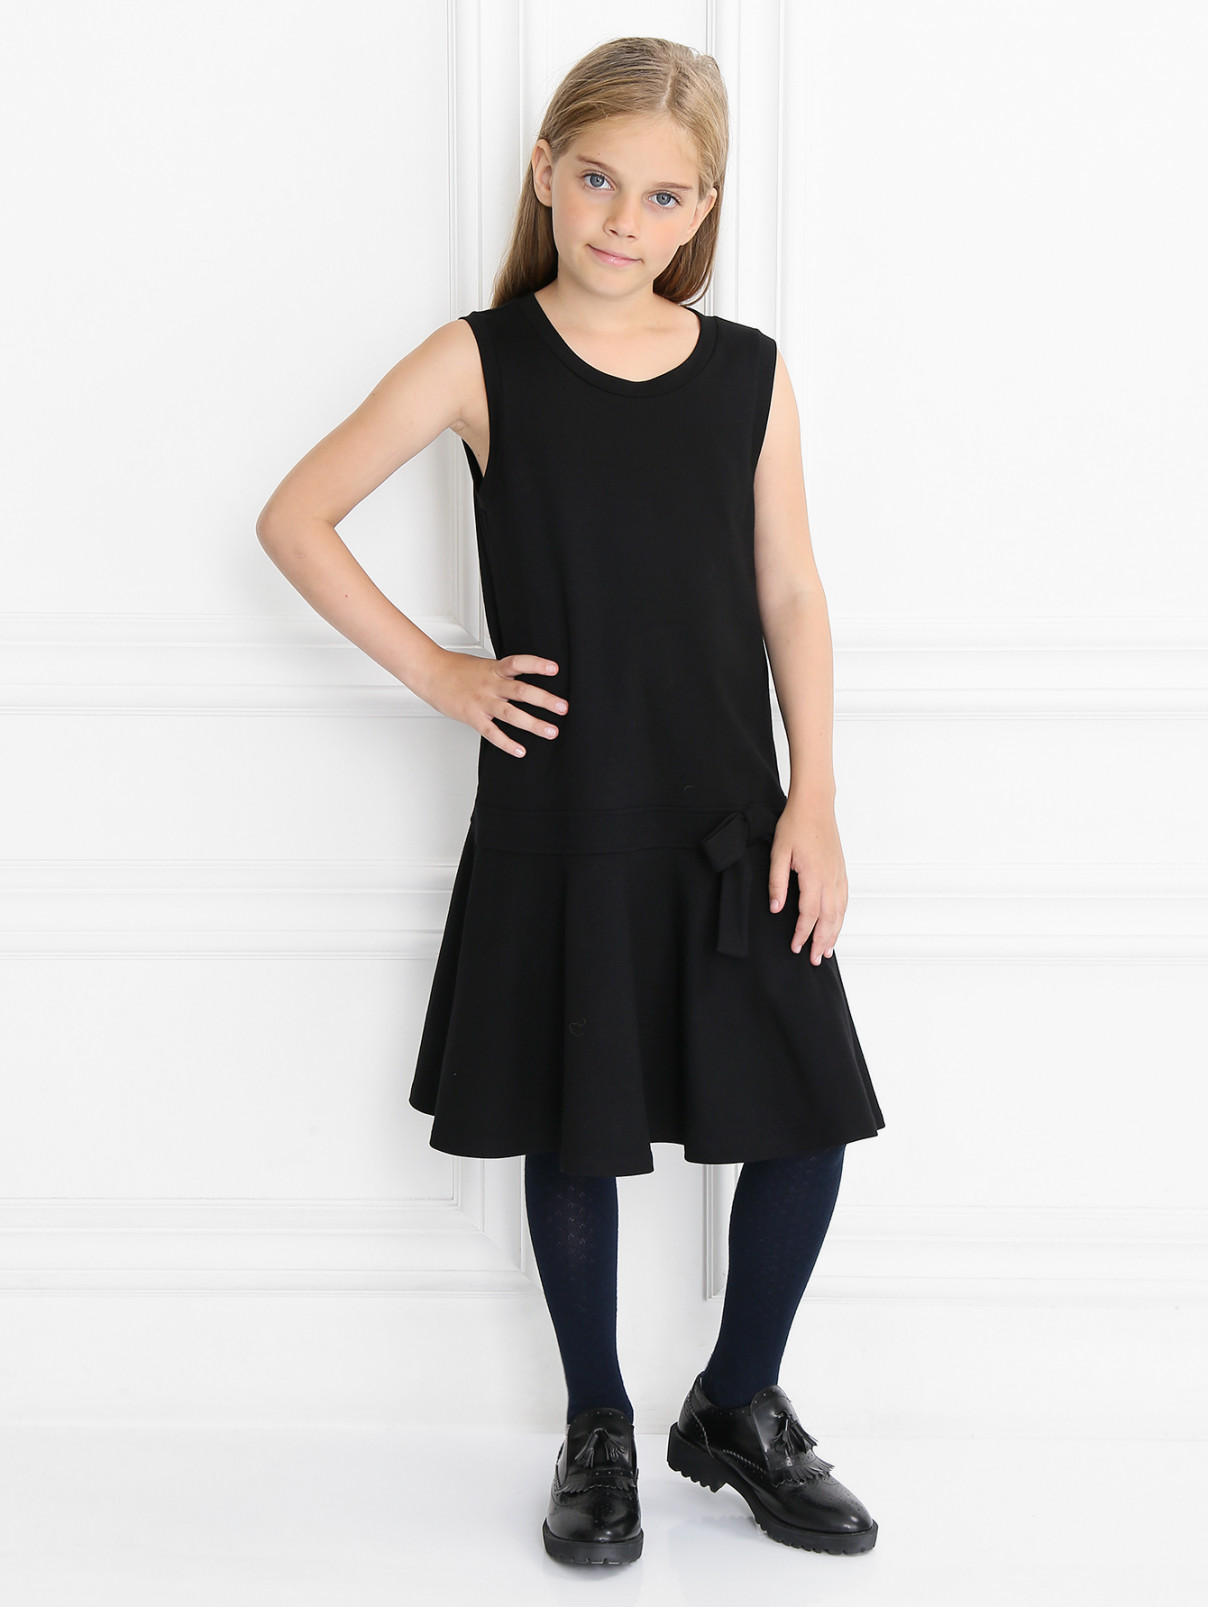 Трикотажное платье с бантиком Aletta Couture  –  Модель Общий вид  – Цвет:  Черный